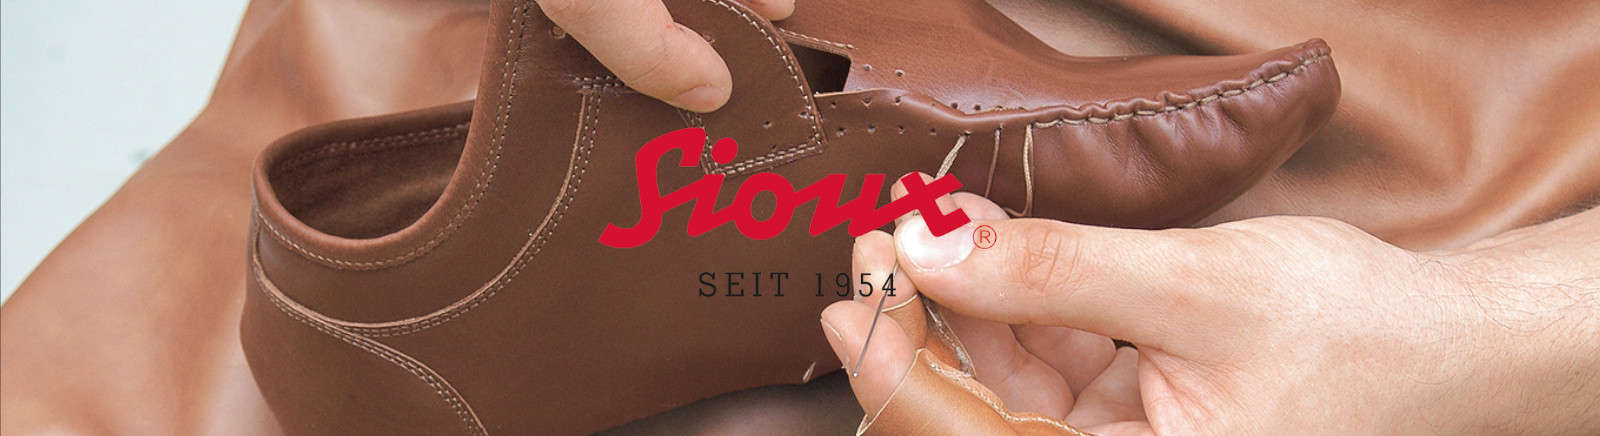 Juppen: Sioux Boots für Damen kaufen online shoppen